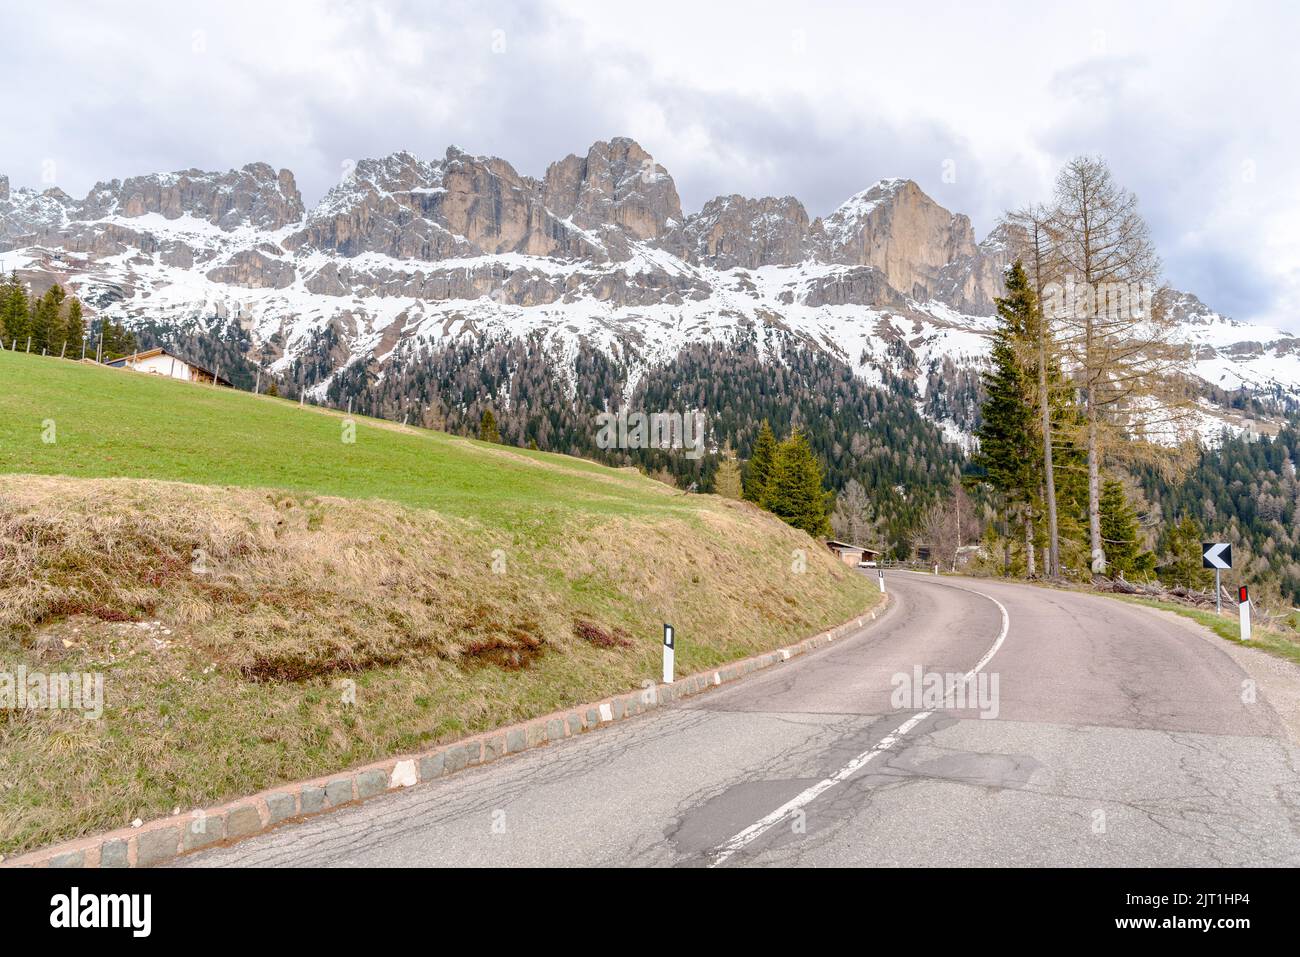 Kurve entlang einer Bergpassstraße, die am Fuße der schneebedeckten Gipfel in den Europäischen Alpen an einem bewölkten Frühlingstag verläuft Stockfoto